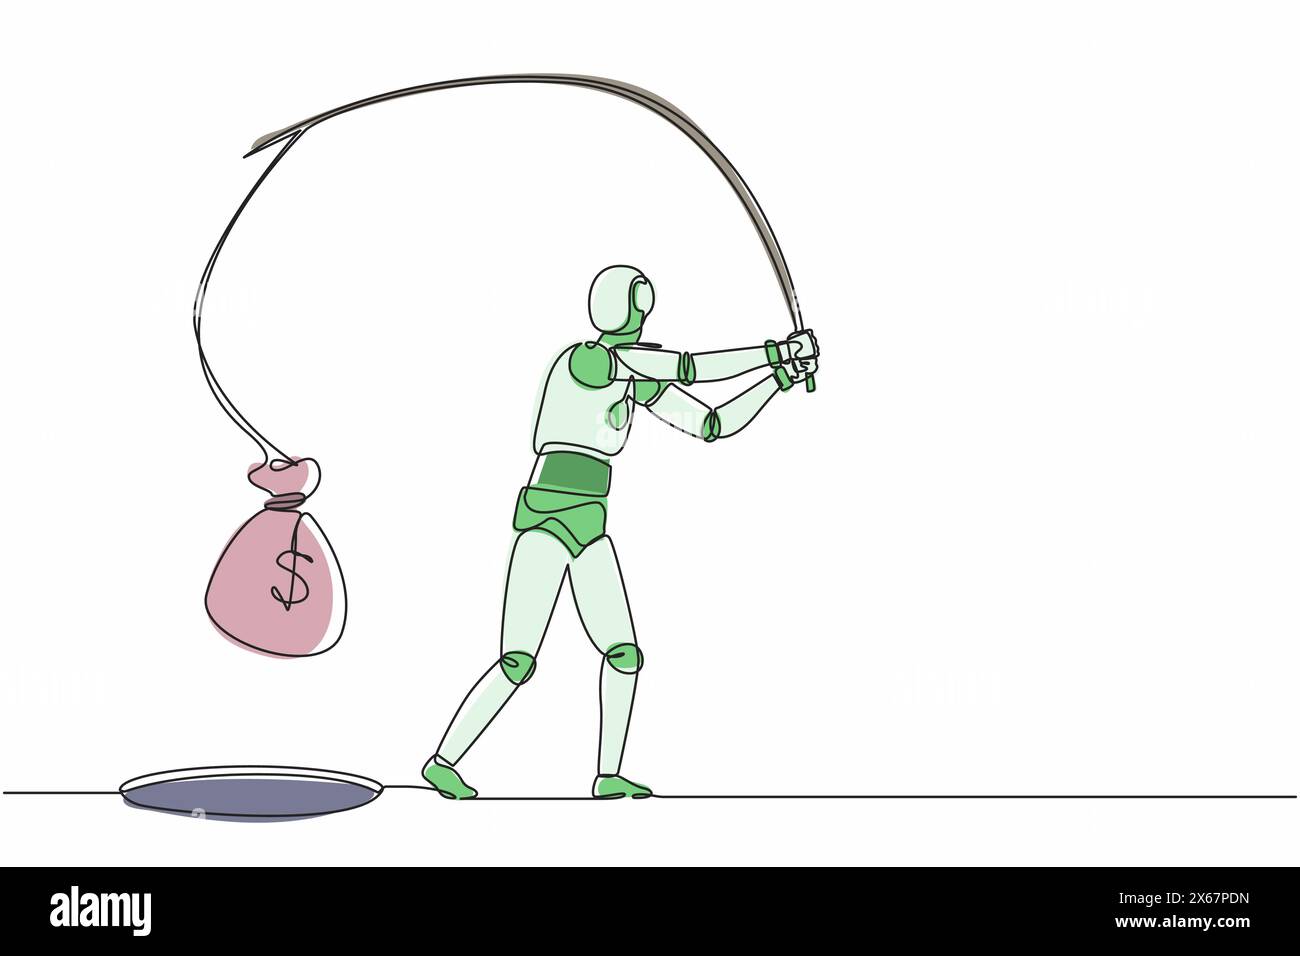 Le robot de dessin continu d'une ligne tenant la canne à pêche a obtenu le grand sac d'argent du trou. Organisme cybernétique robot humanoïde. Développement futur de la robotique. Si Illustration de Vecteur